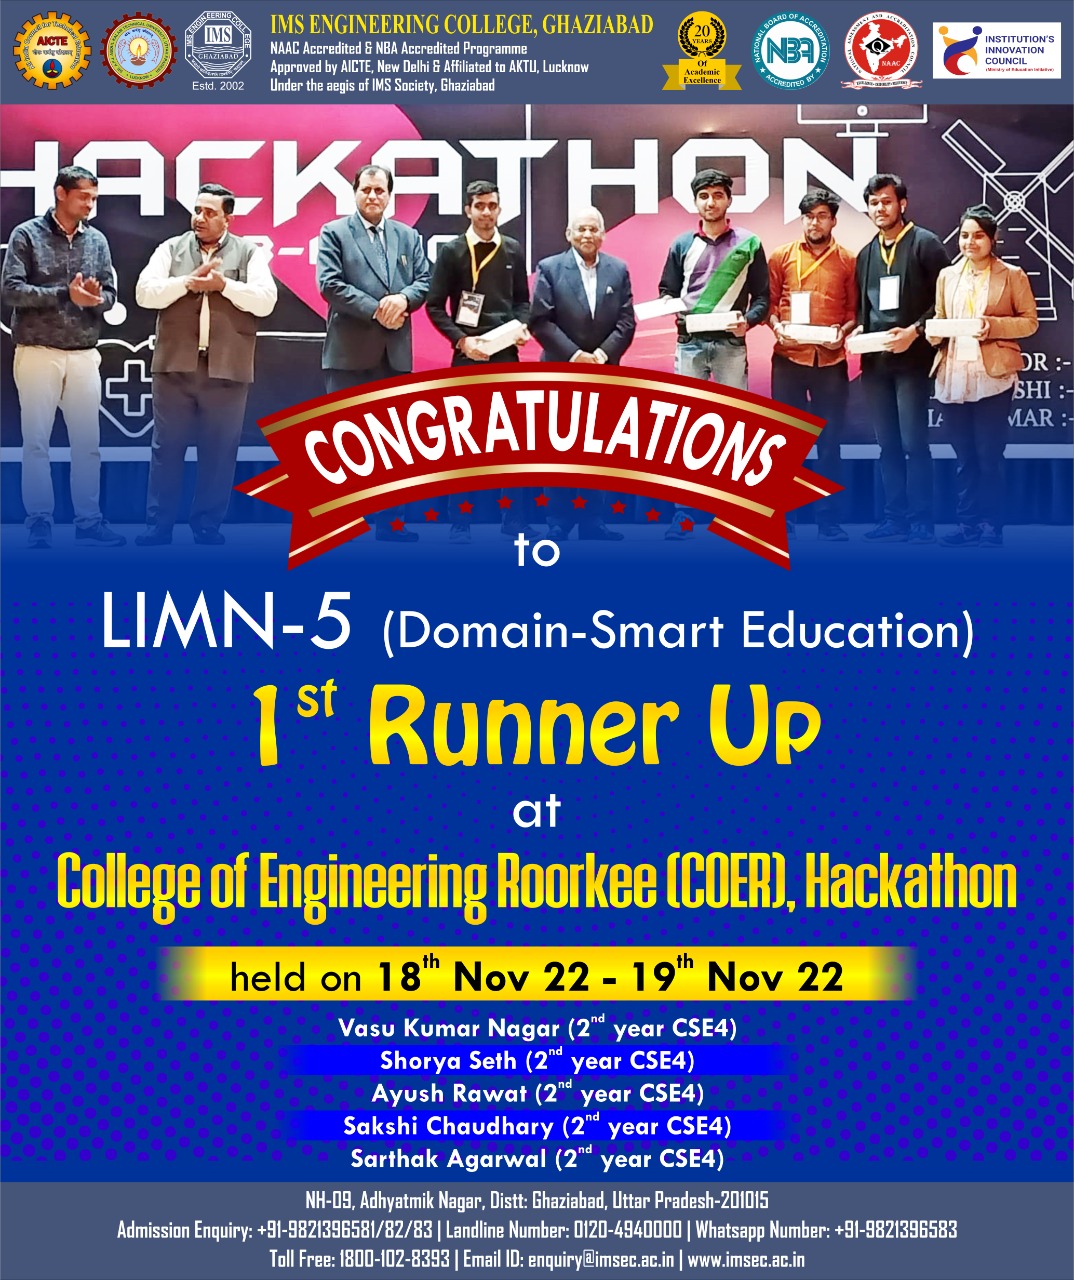 Hackathon organized by COER College of Engineering, Roorkee from 18-19 Nov, 2022